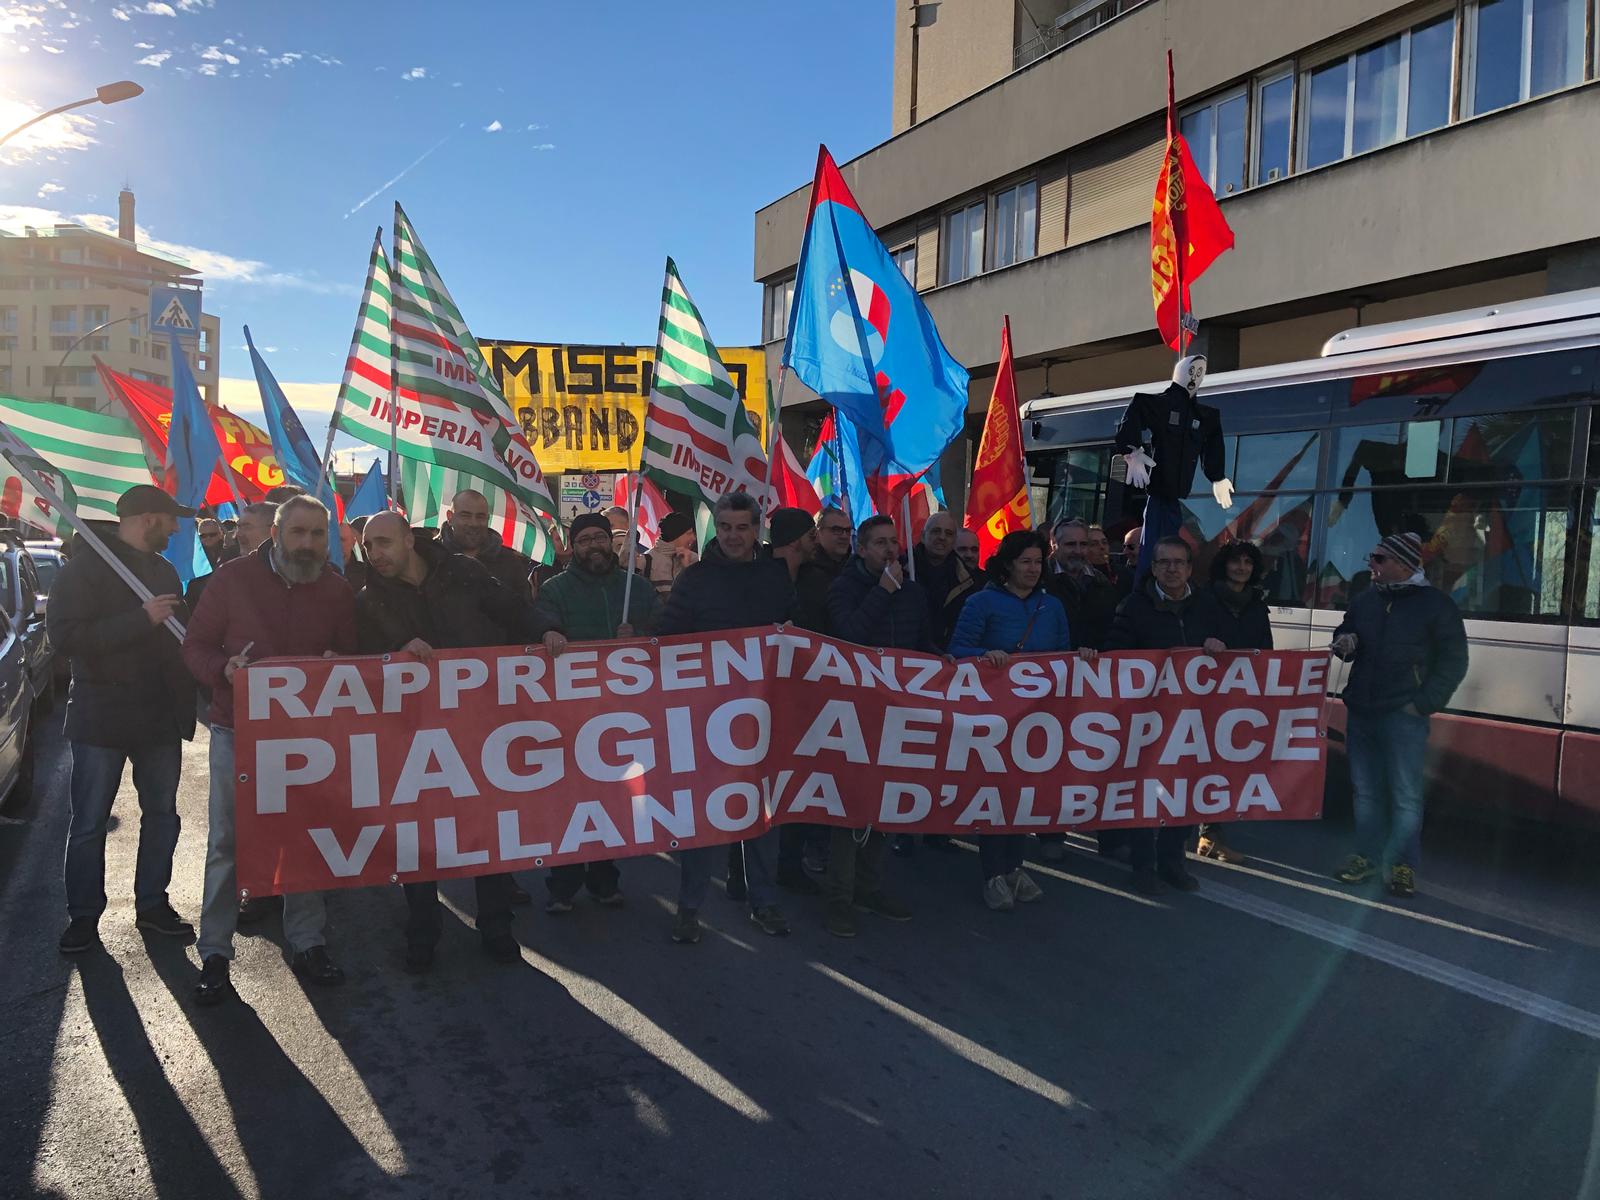 Piaggio Aero, il 3 aprile sarà sciopero: "Basta rinvii dal Governo"